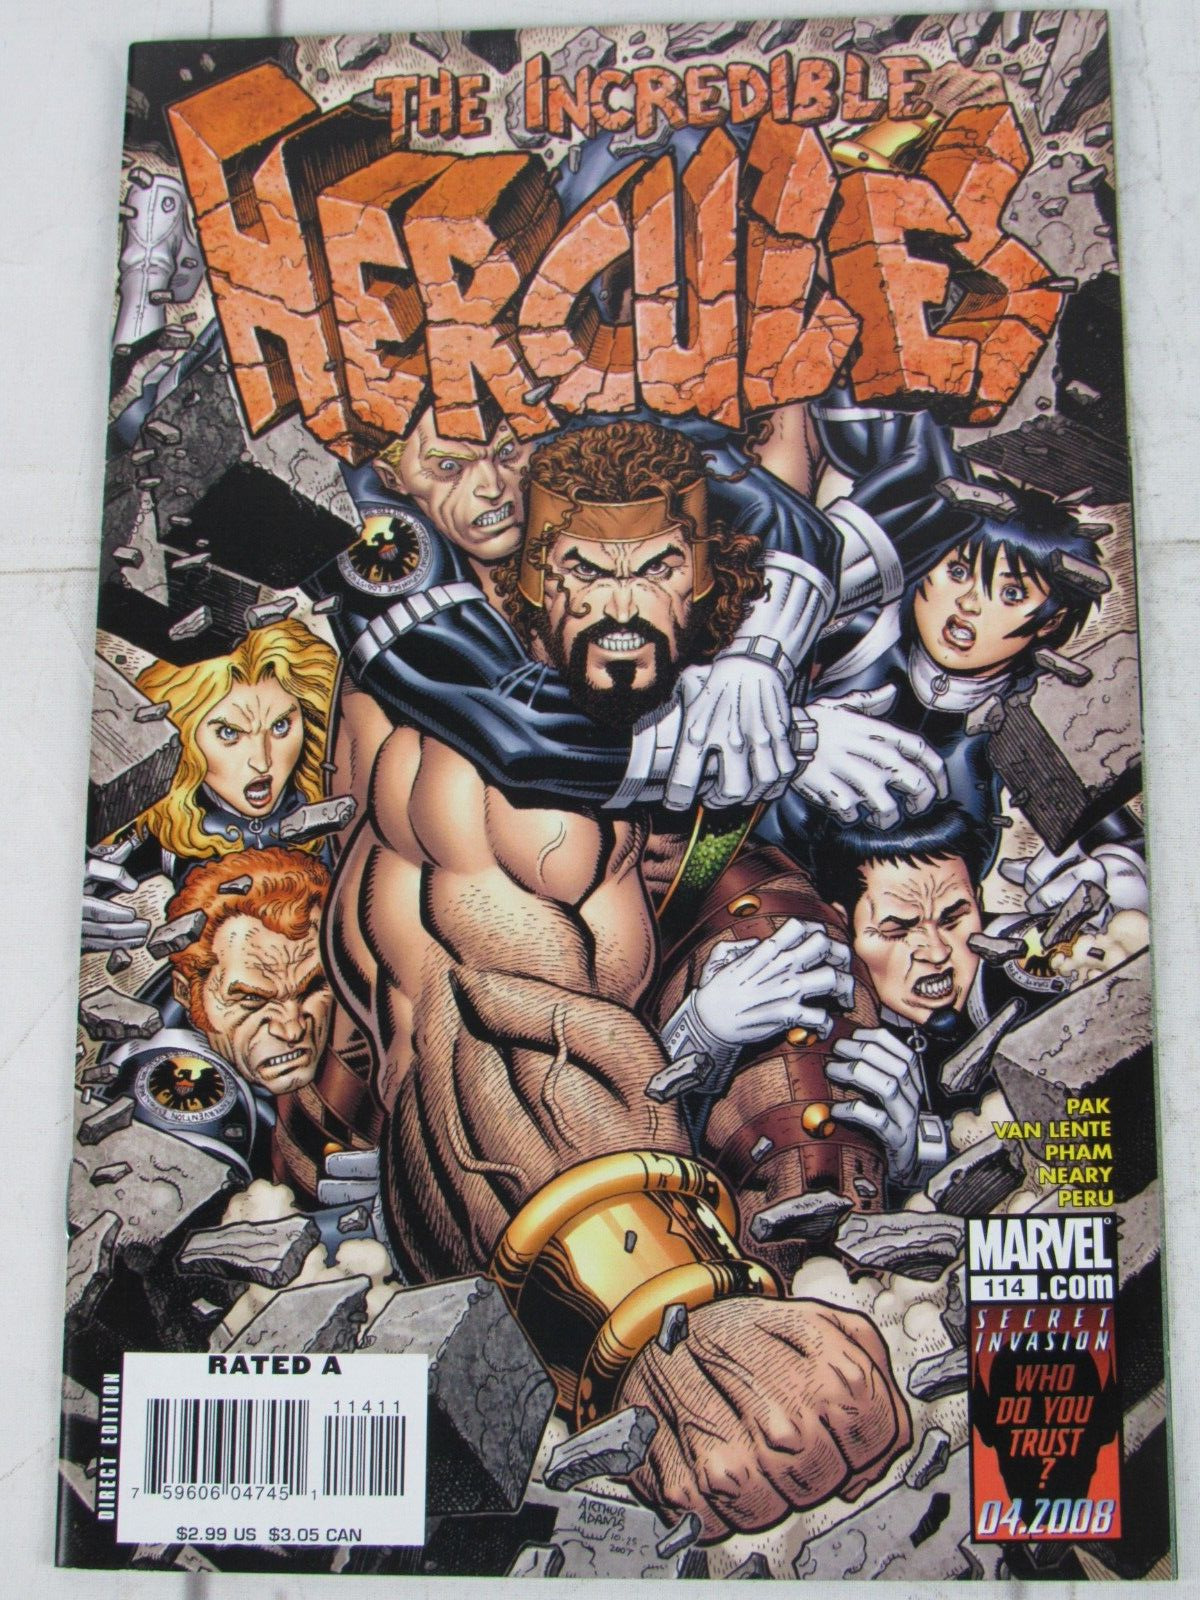 The Incredible Hercules #114 Feb. 2008 Marvel Comics